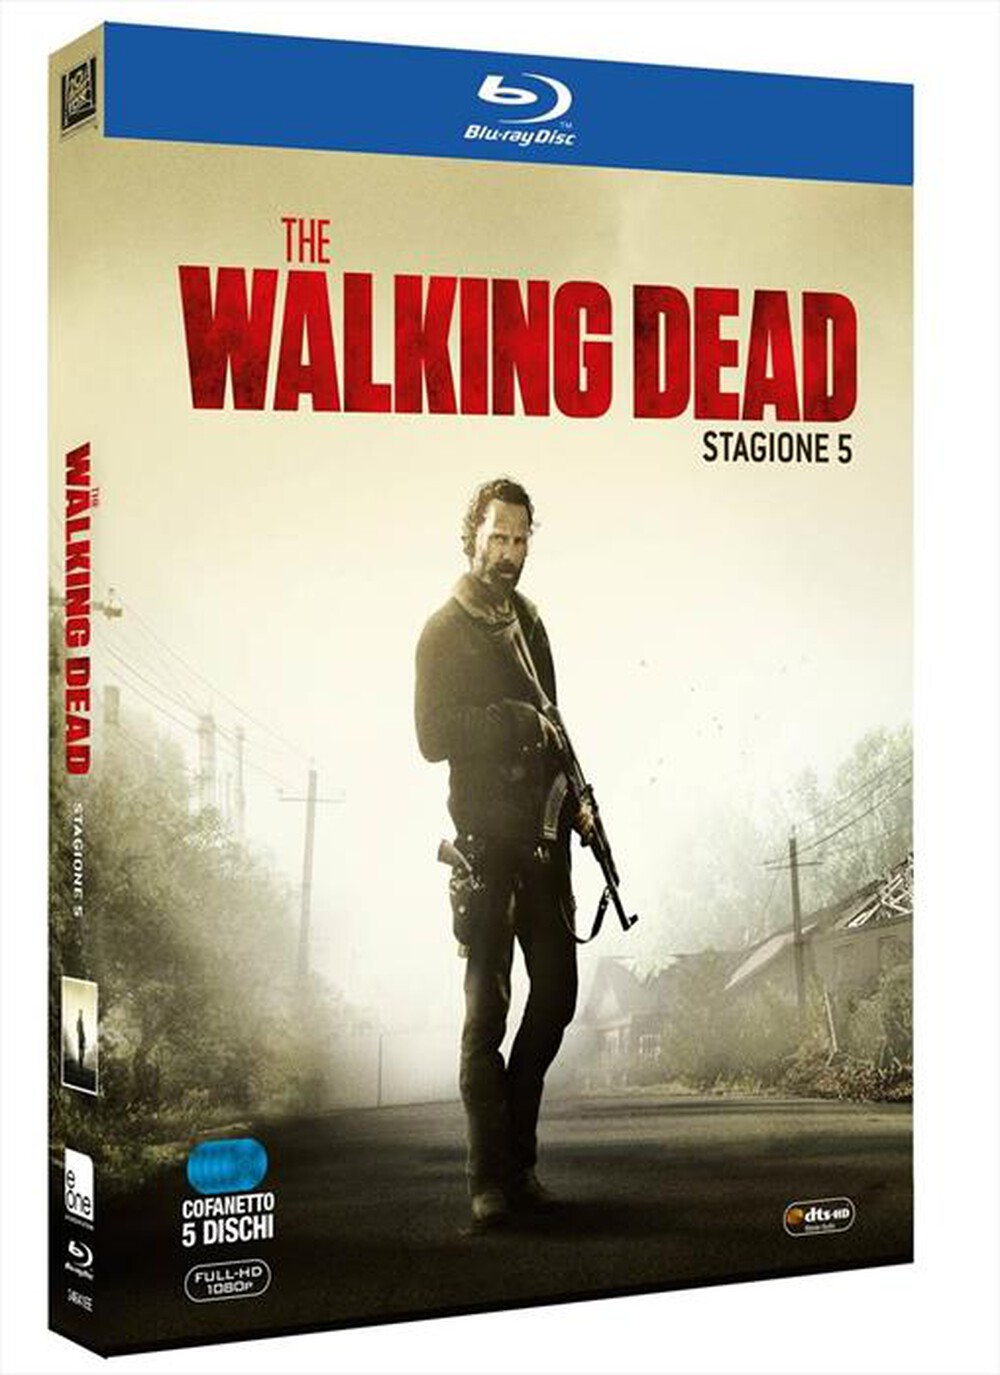 "WALT DISNEY - Walking Dead (The) - Stagione 05 (5 Blu-Ray) - "